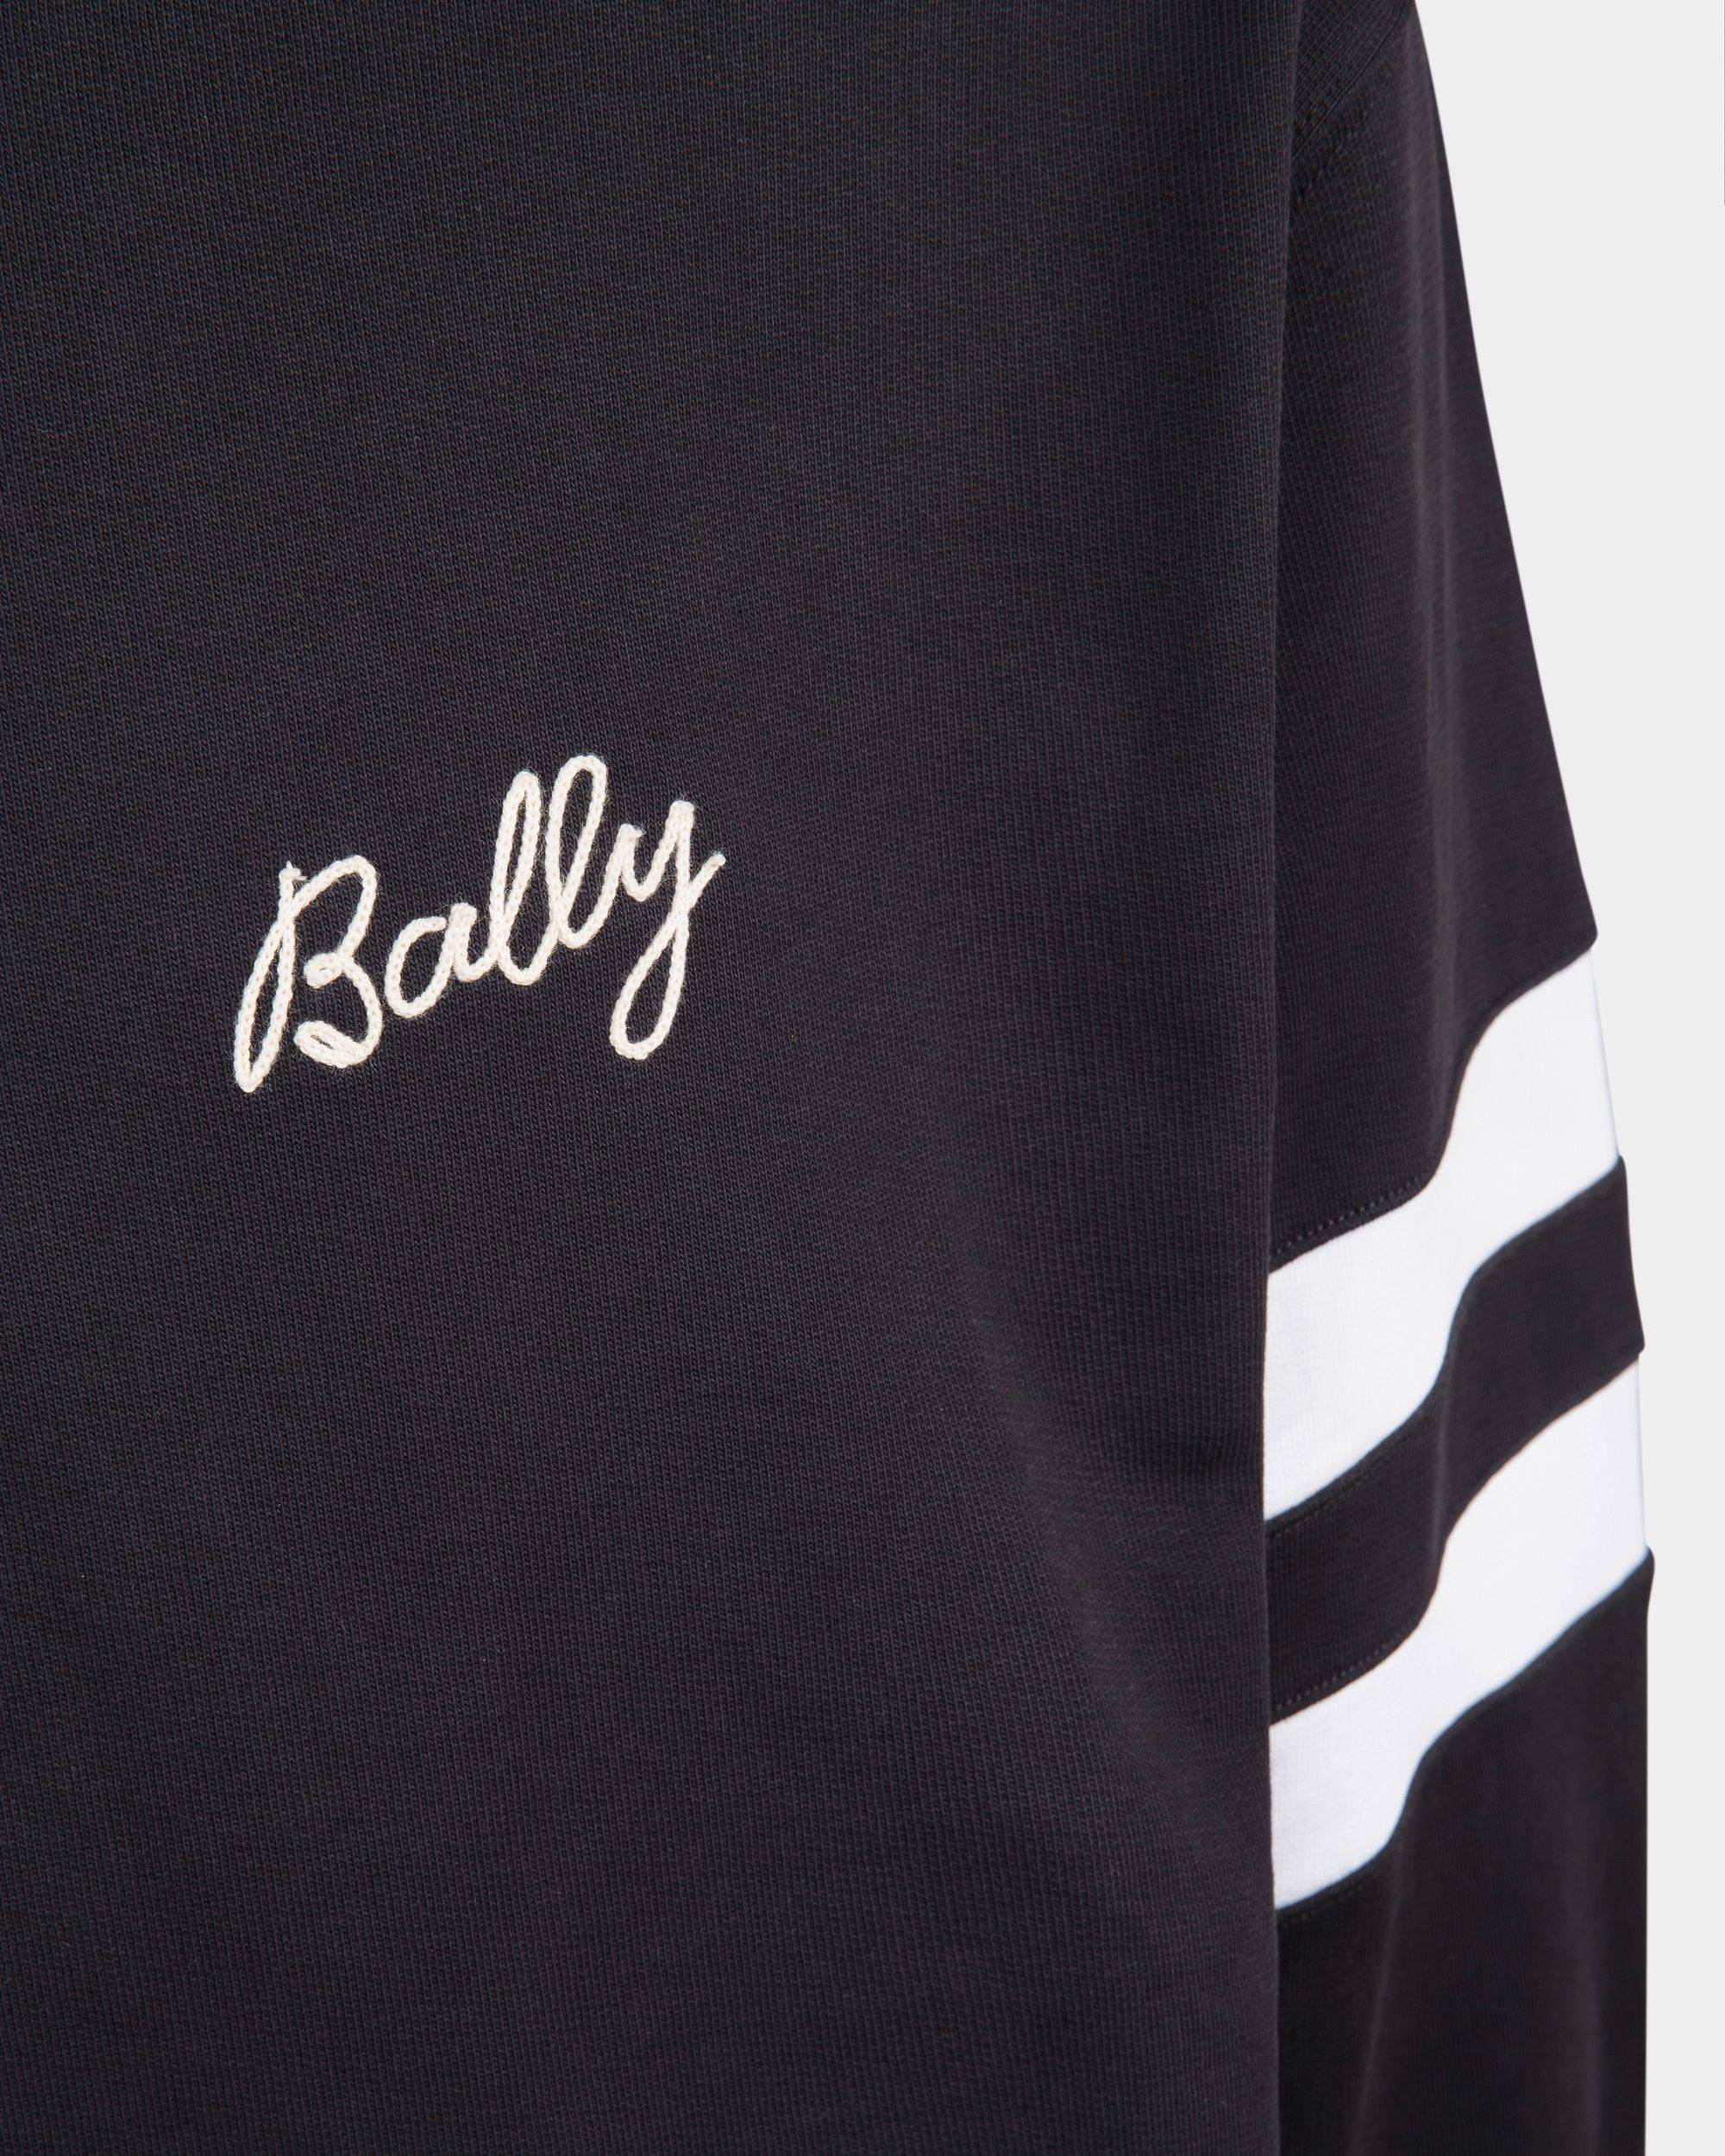 Poloshirt für Herren aus marineblauer Baumwolle | Bally | Model getragen Detail